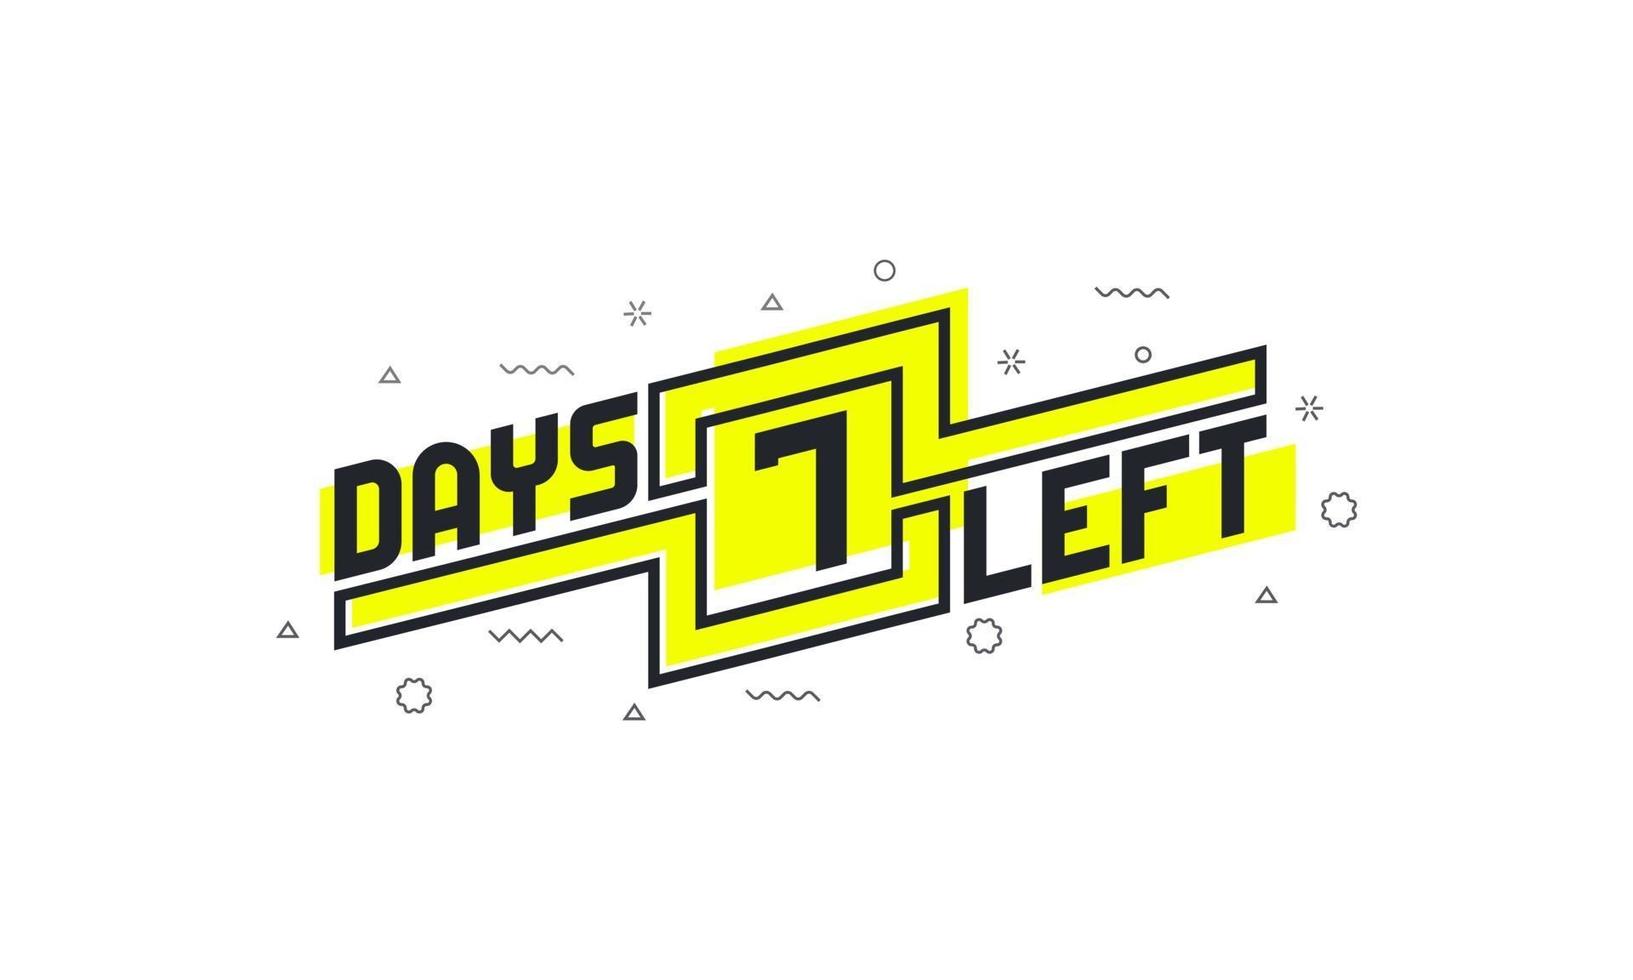 Noch 7 Tage Countdown-Zeichen zum Verkauf oder zur Promotion. vektor